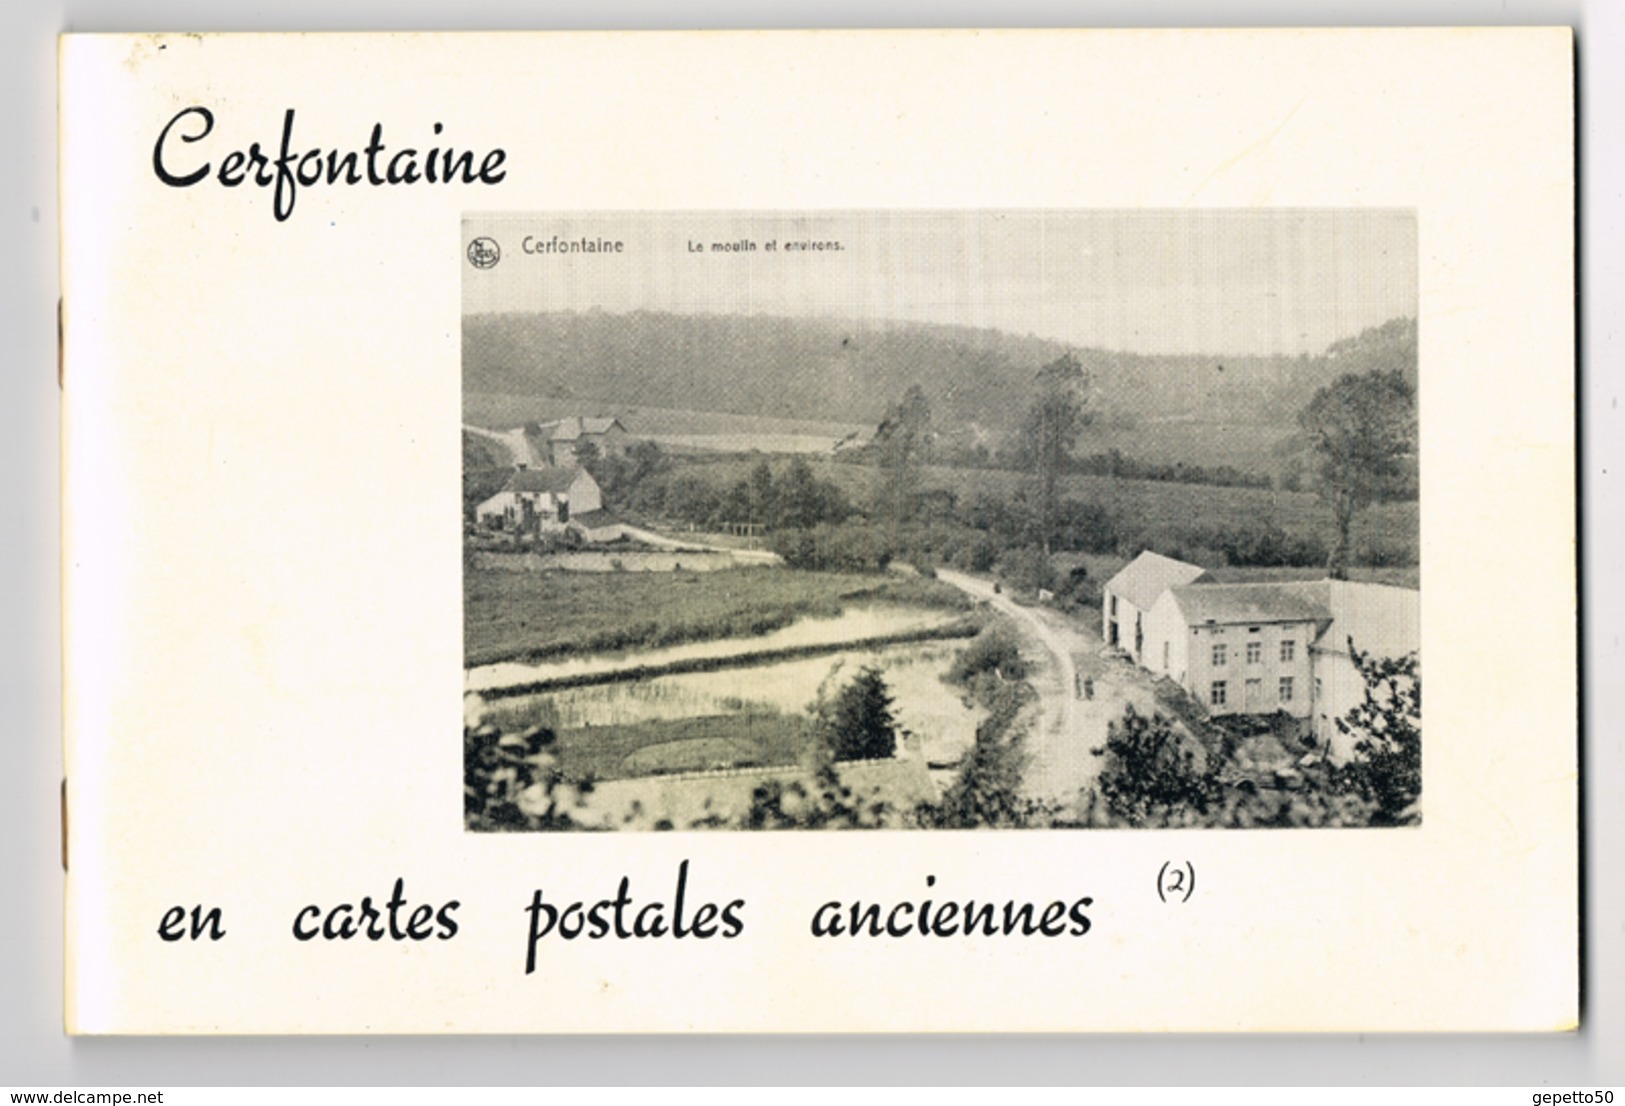 Cerfontaine Livre (n°2) De CP AnciennesEd Musée De Cerfontaine Repro De 70 Cartes - Livres & Catalogues